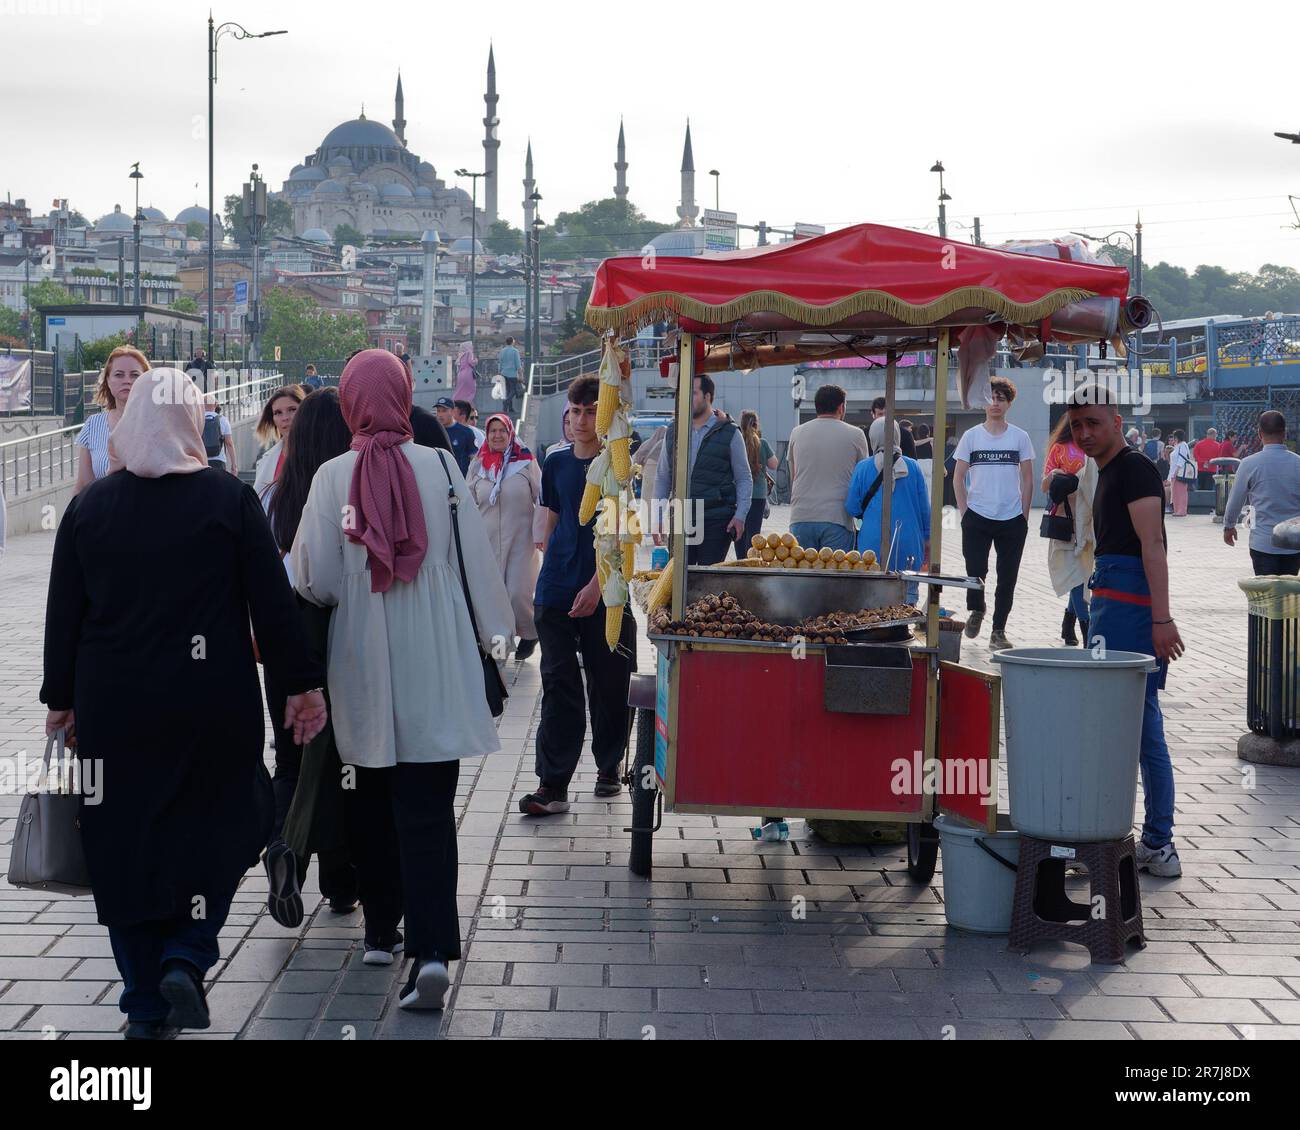 Des femmes musulmanes passent devant une charrette vendant du maïs sucré dans le district de Eminönü avec la mosquée Suleymaniye au loin, Istanbul, Turquie Banque D'Images